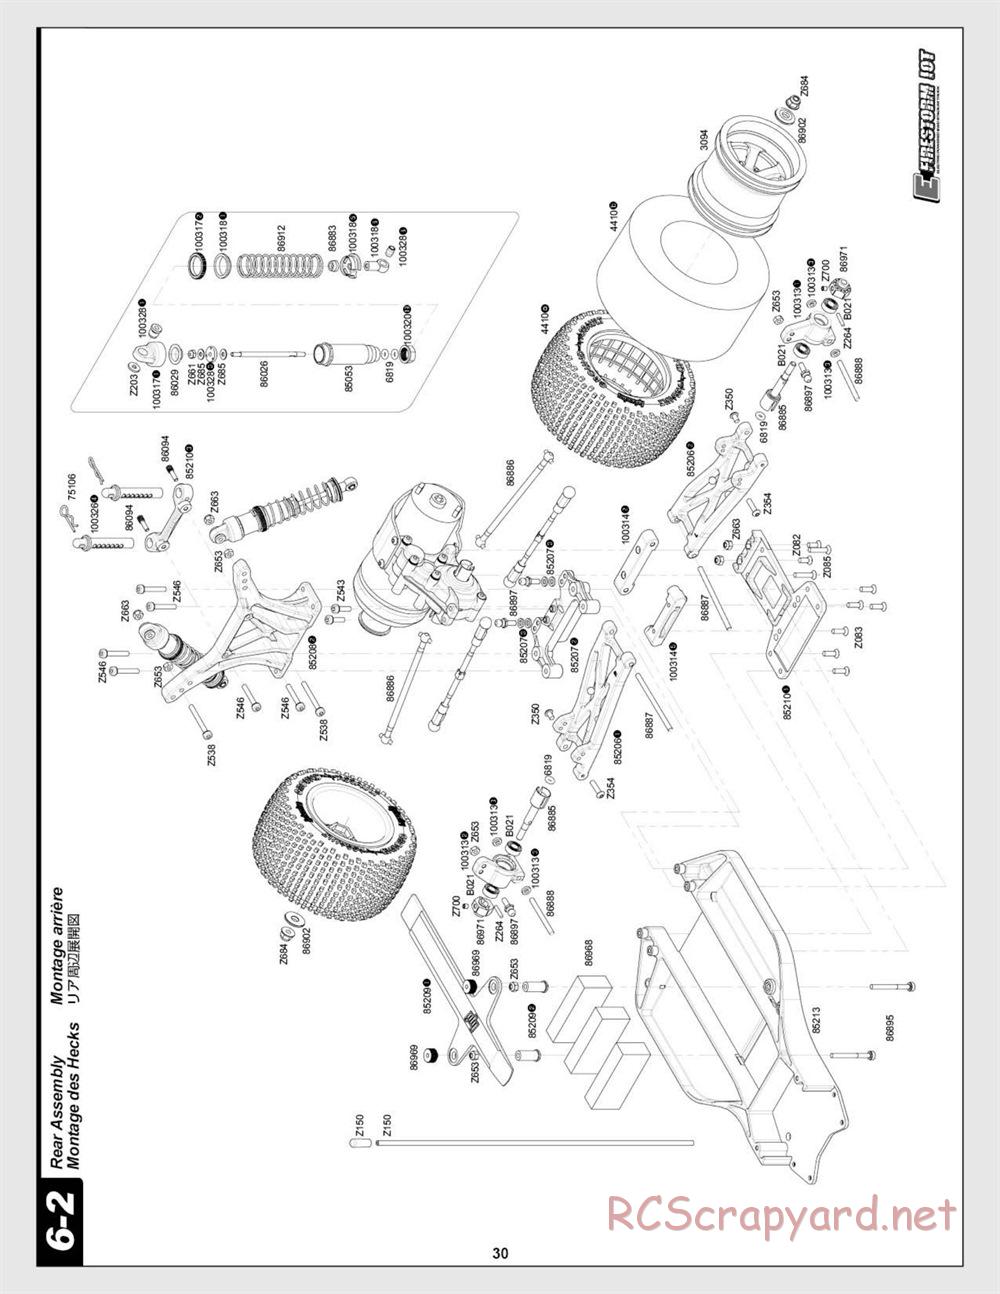 HPI - E-Firestorm 10T - Manual - Page 30